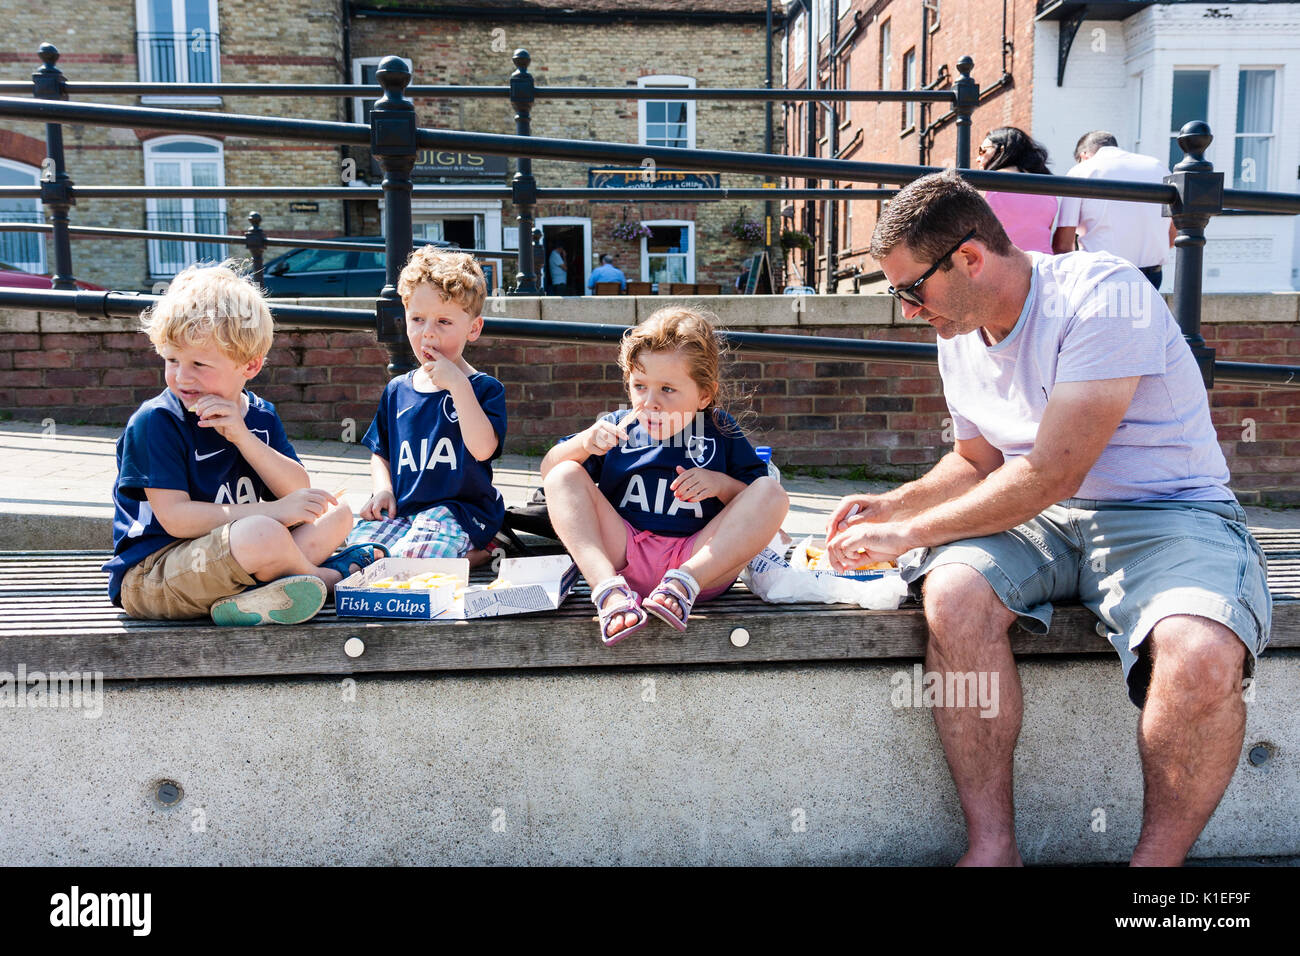 England, Sandwich. Drei junge Kinder, 5-6 Jahre alt, mit ihrem Vater, sitzen an der Wand in einem Feld von Fisch und Chips im Sommer strahlender Sonnenschein. Stockfoto